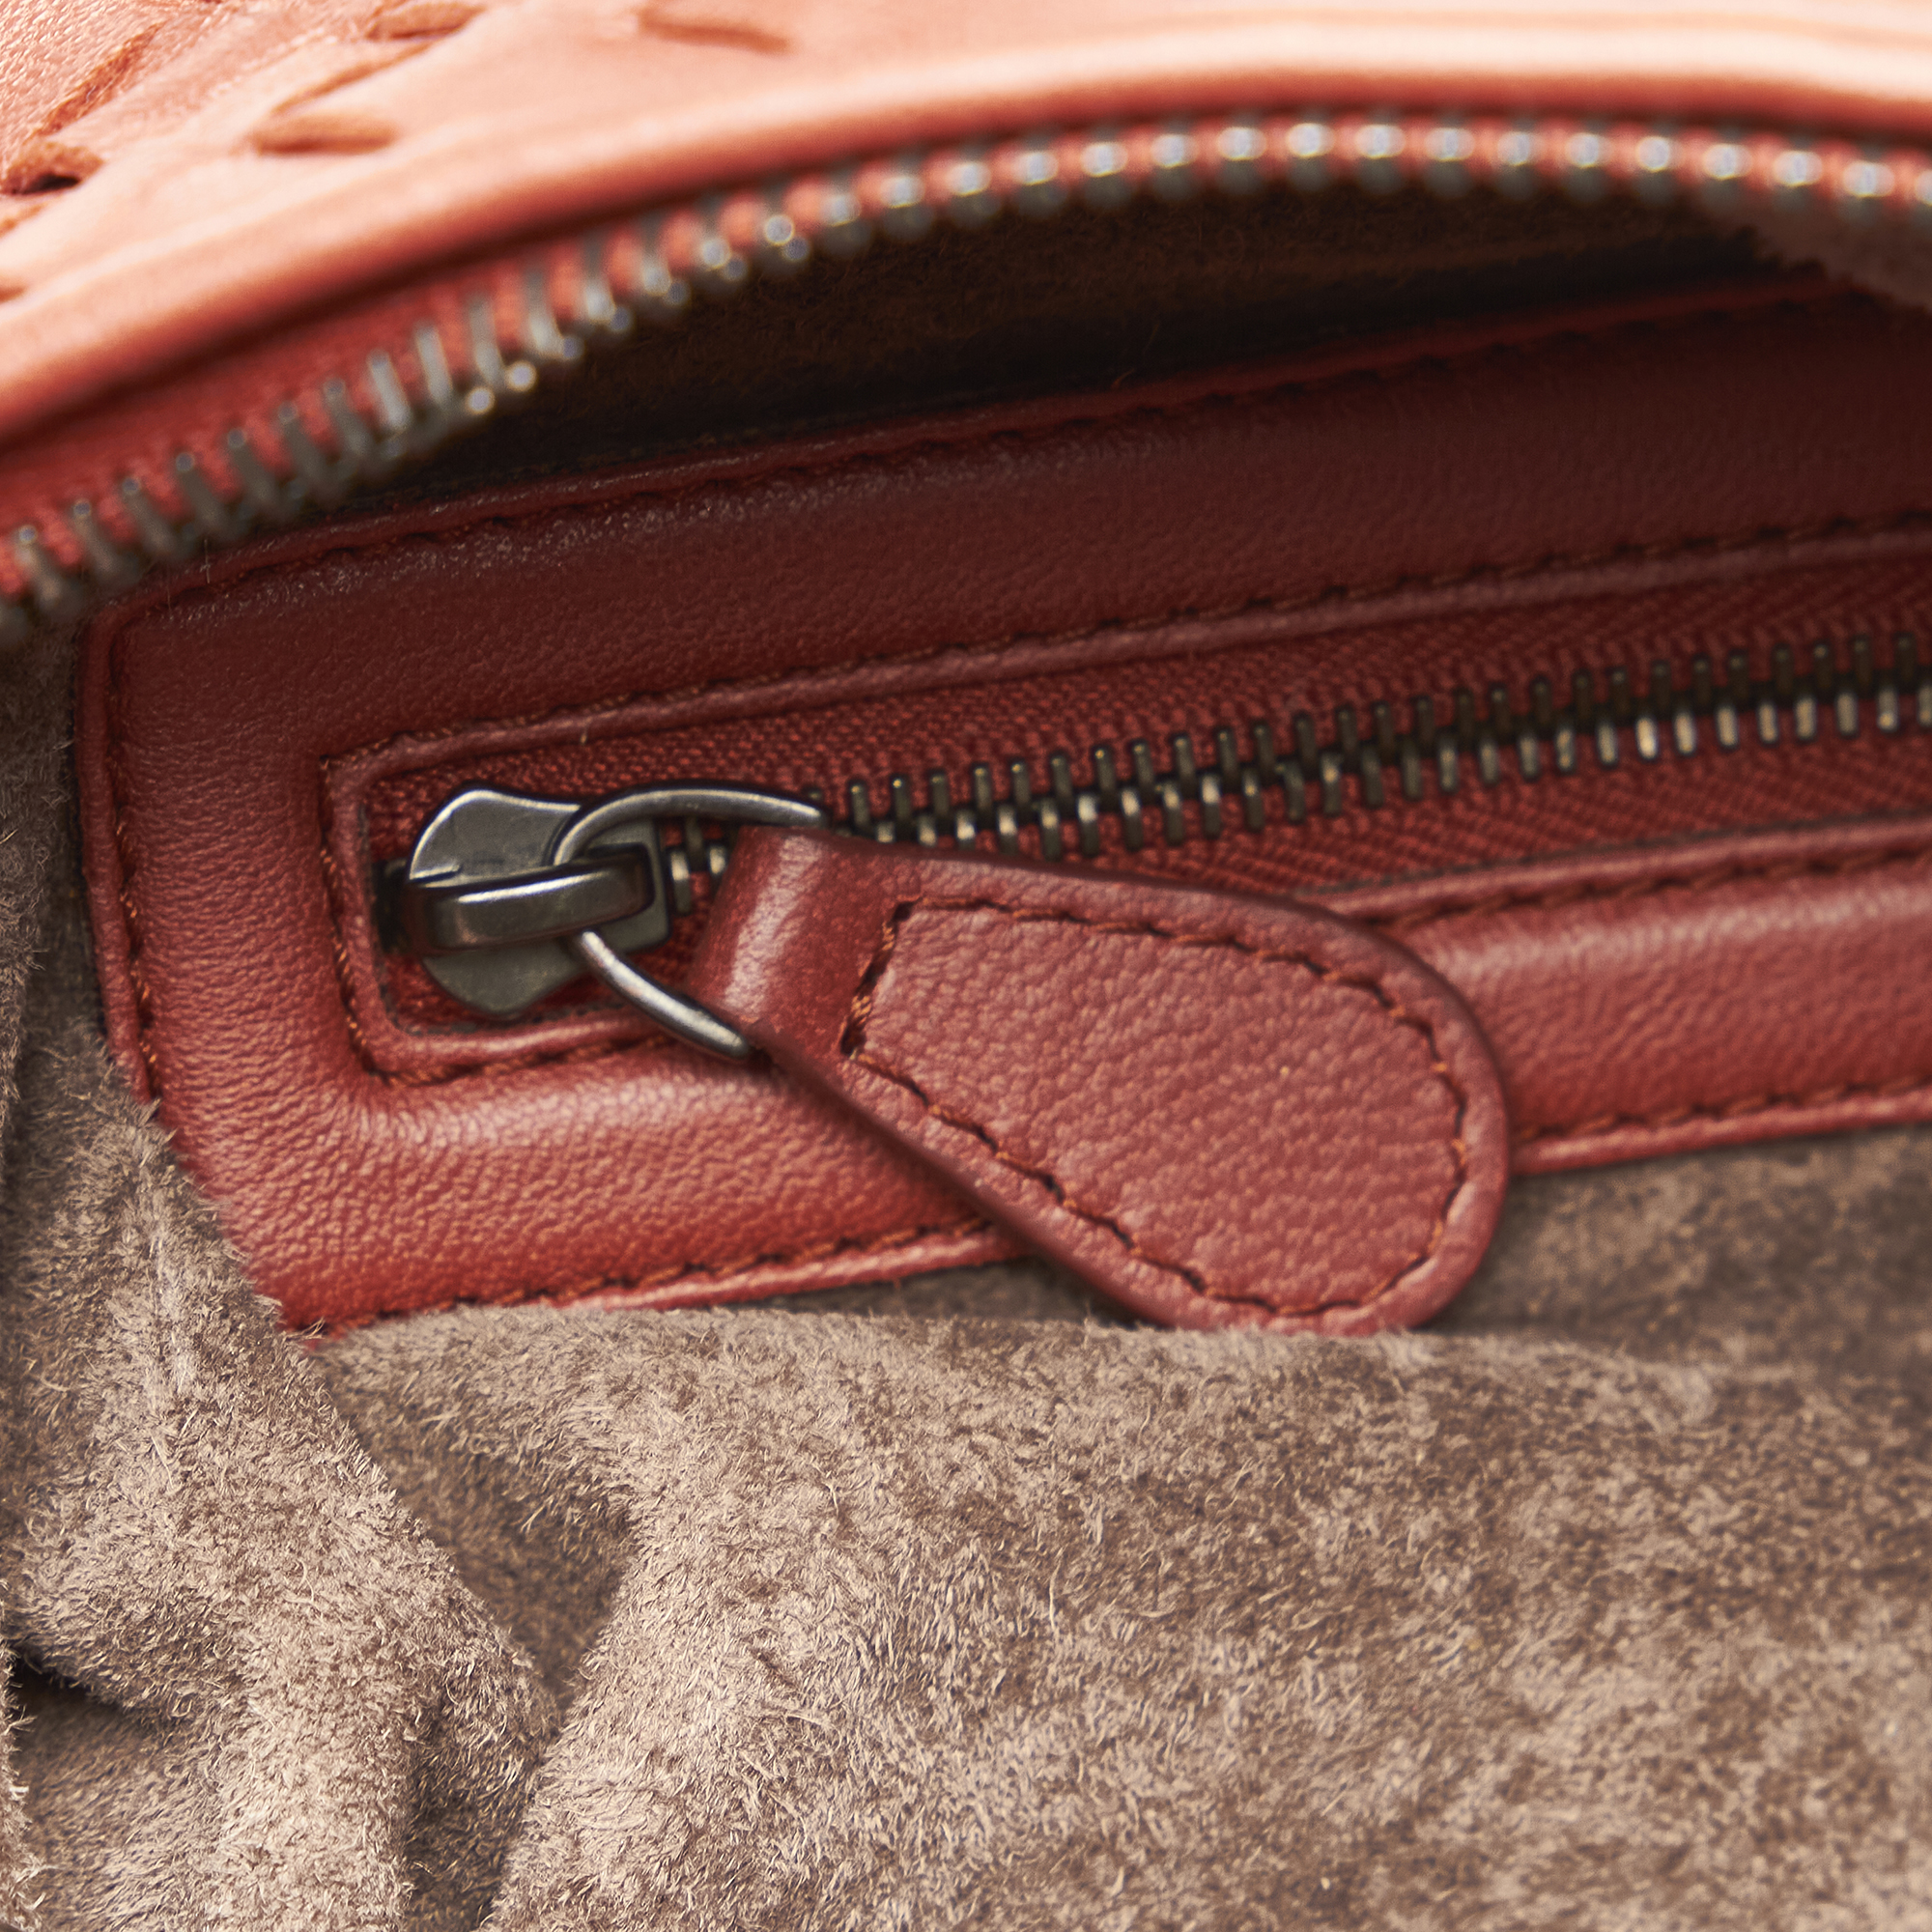 Bottega Veneta Intrecciato Leather Handbag - Image 9 of 11